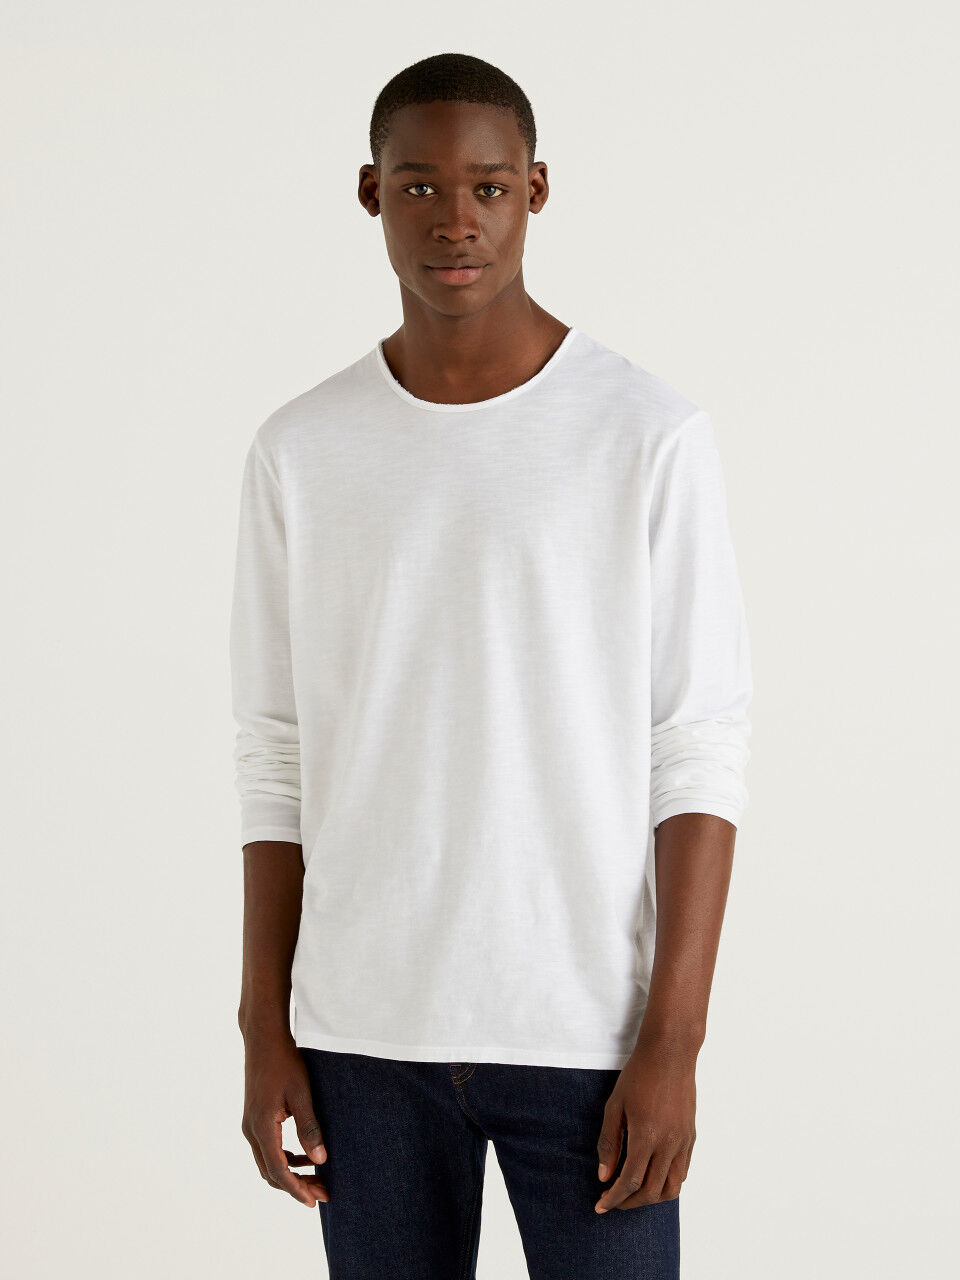 long sleeve white v-neck t-shirt